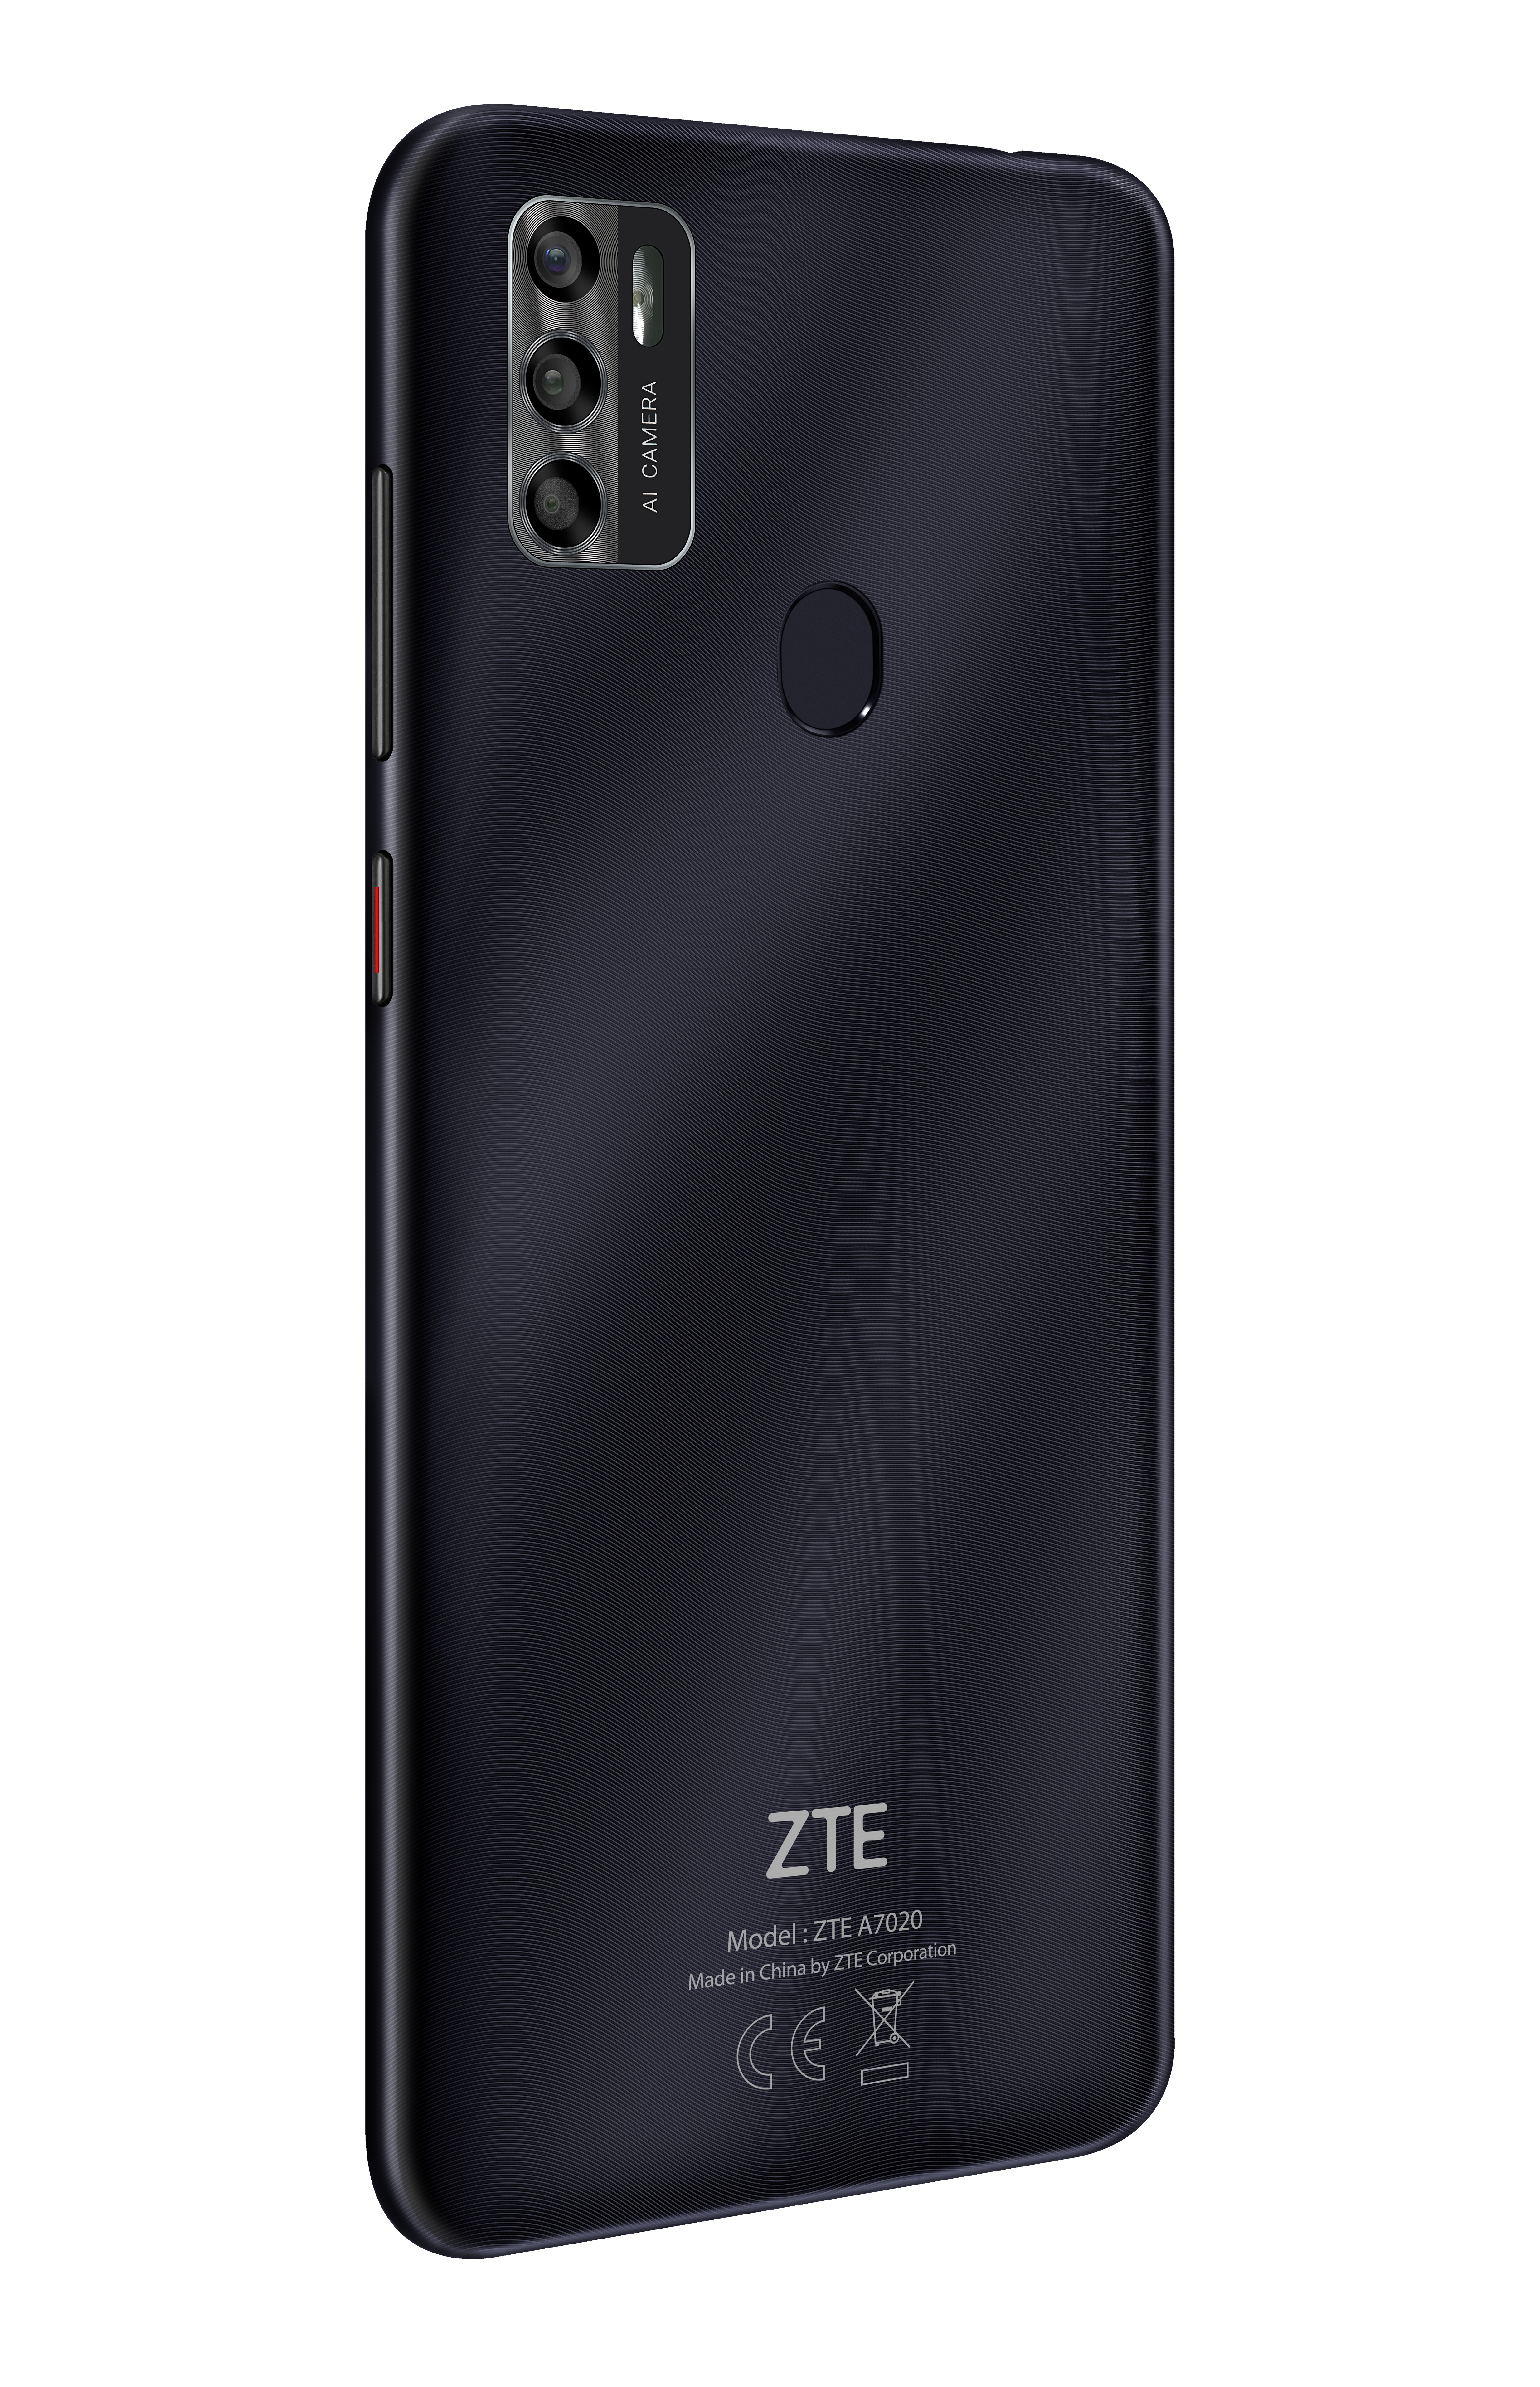 SIM A7s Dual Schwarz ZTE 64 GB 2020